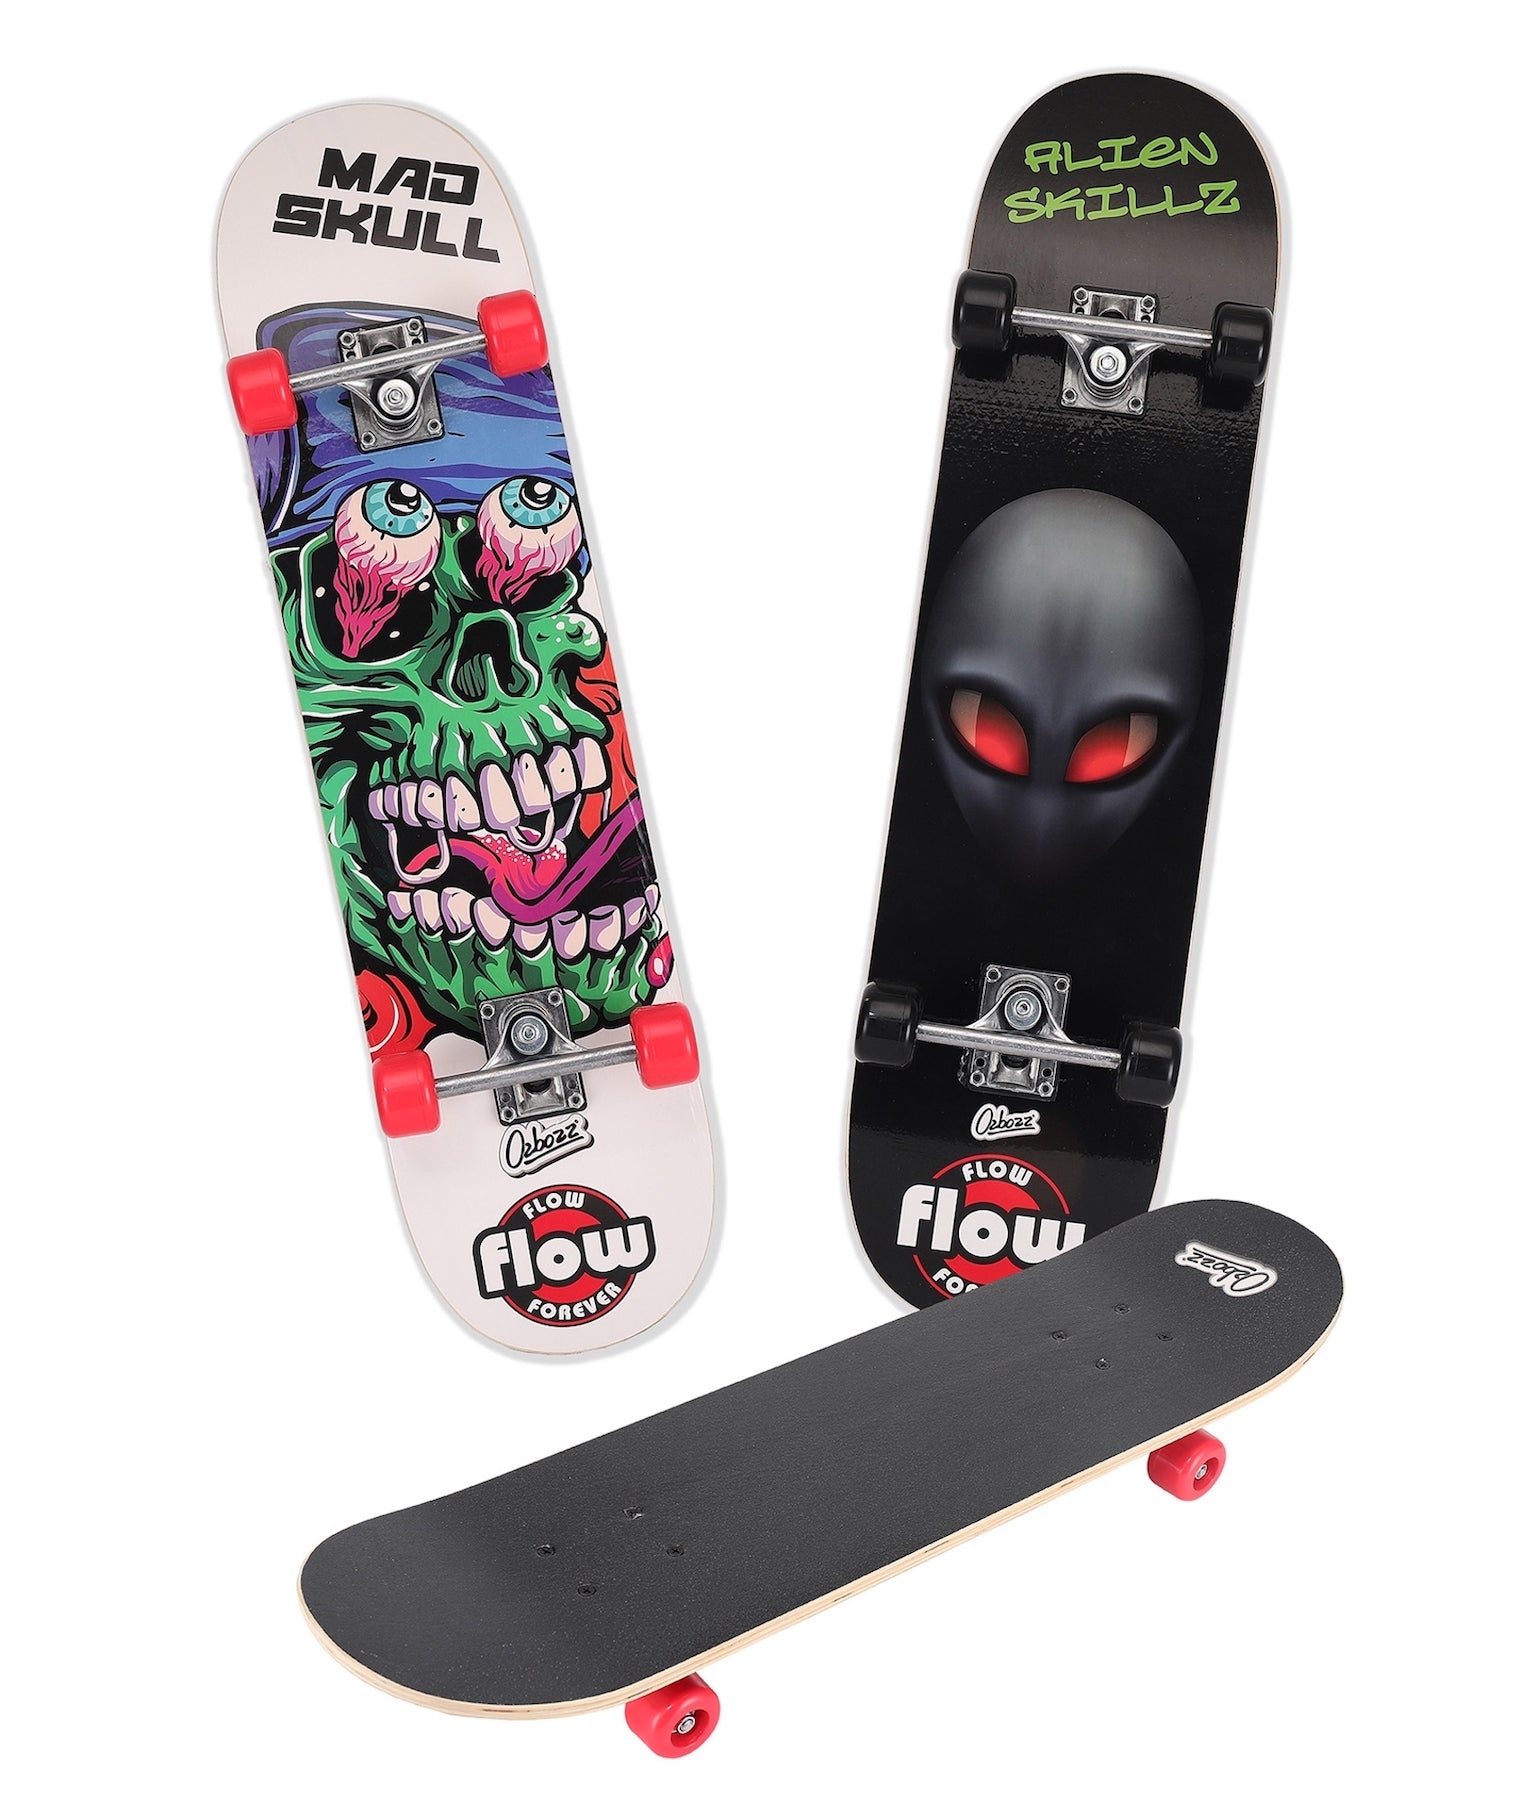 Maple Wood Skateboard 31″ Wooden Mad Skull Alien Skillz Chaser